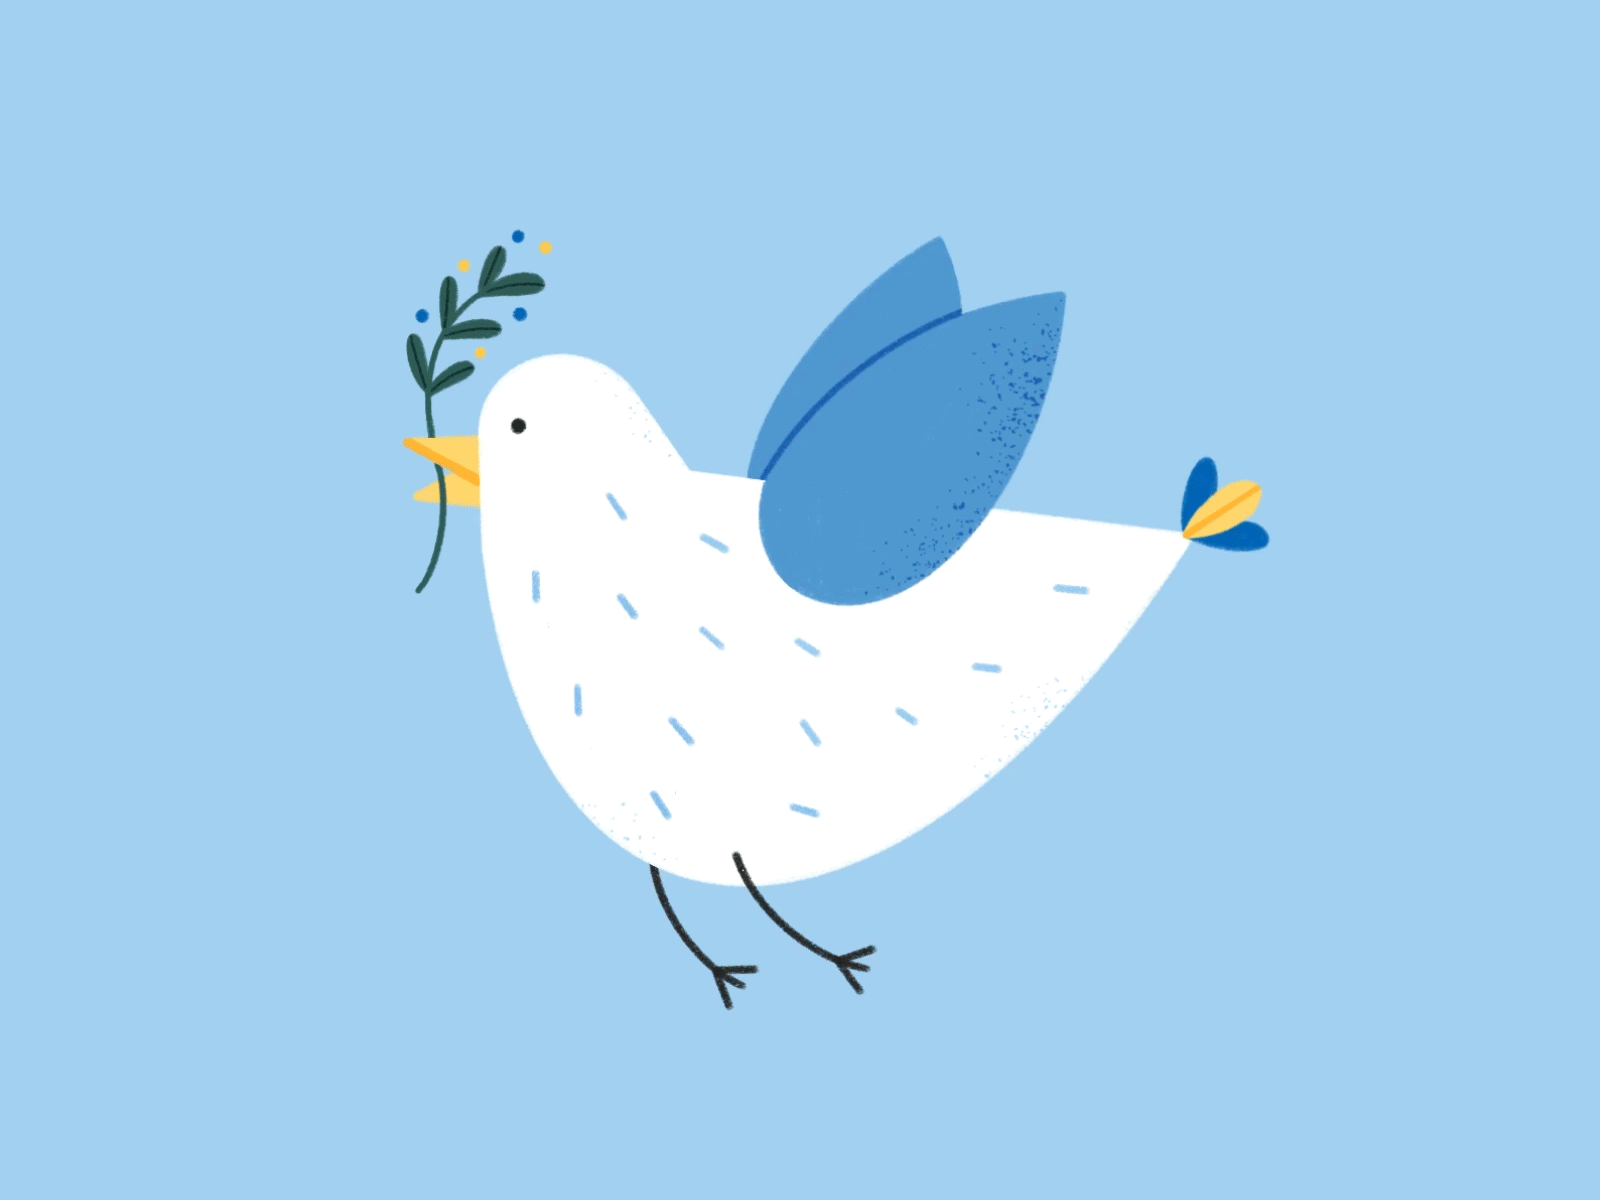 Peace for Ukraine animation design dove drawing flying bird illustration peace peace dove procreate stop war ukraine